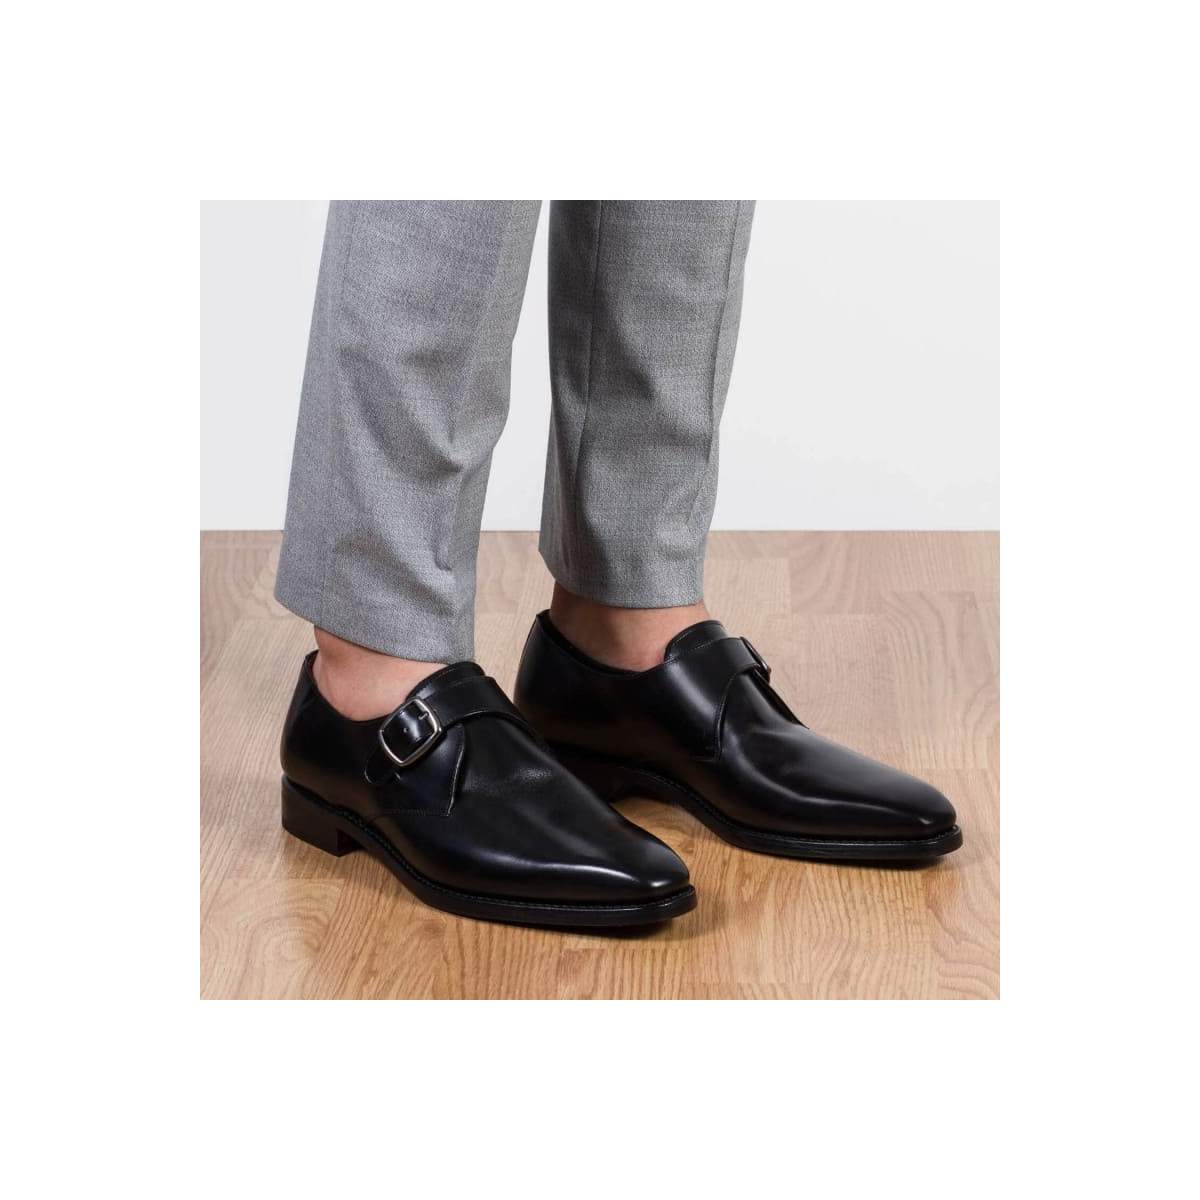 Chaussures à boucle homme en cuir noir Homme - michel